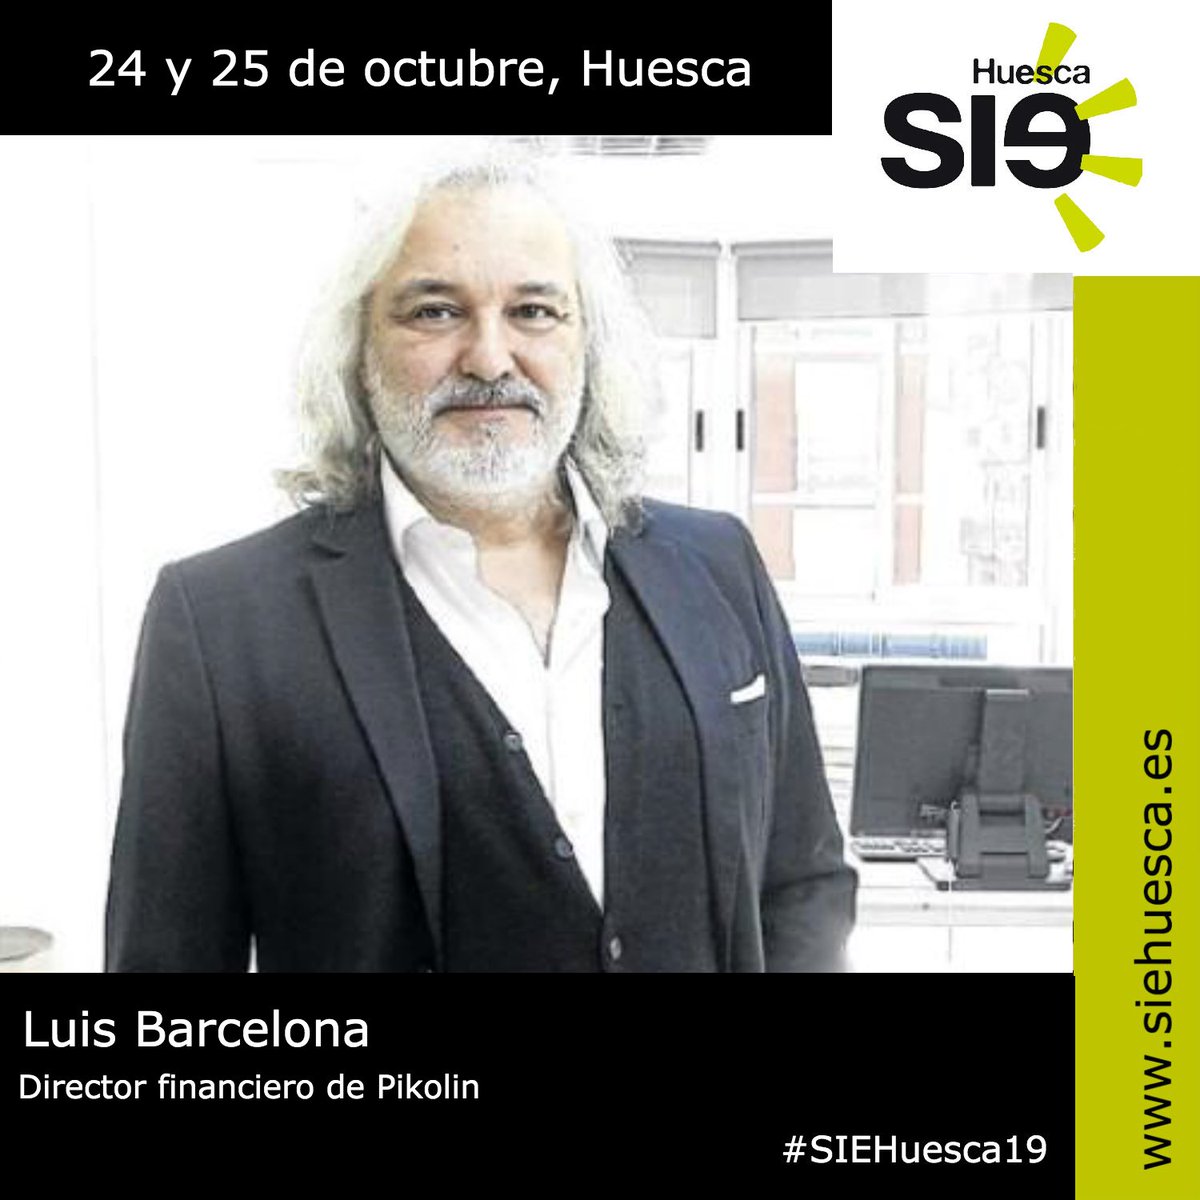 SIE Huesca on Twitter: "Seguimos desvelando ponentes de #siehuesca19 Luis Barcelona director financiero de @pikolin y del grupo Iberebro y experiencia en la industria bancaria como Gerente de Banca